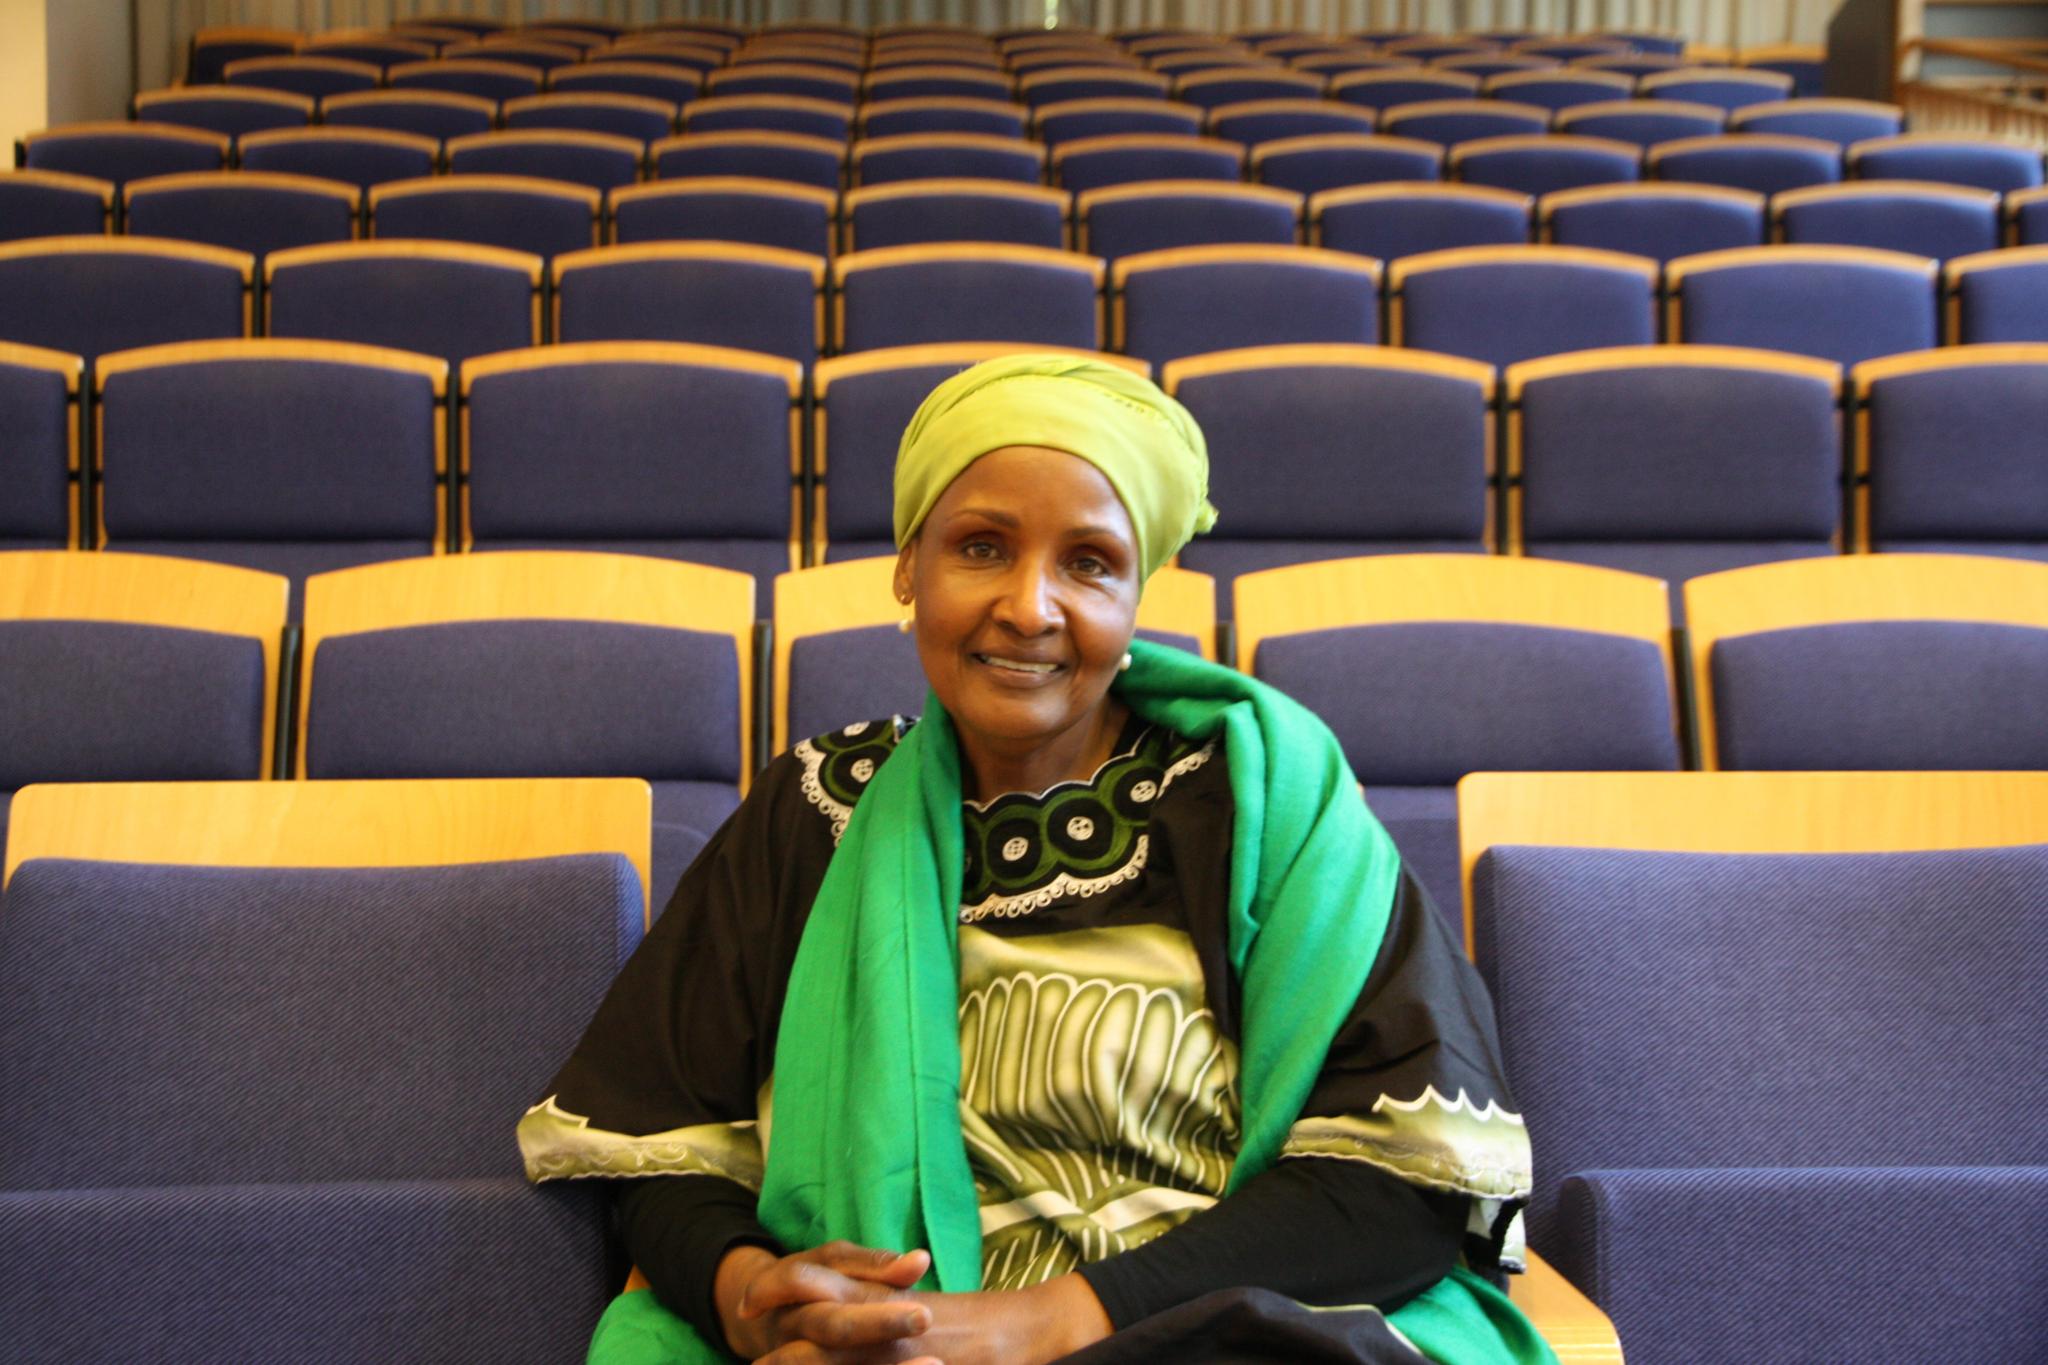 Safia Abdi Haase kom til Norge som flyktning i 1992. Hun tok sykepleierutdanning i Norge. I dag jobber hun som sykepleierkonsulent i Stiftelsen Amathea. Denne uken skal hun holde foredrag for politikere og ansatte i Oslo kommune om blant annet sin arbeidslivserfaring. Dette skjer i forbindelse med OXLO-konferansen.